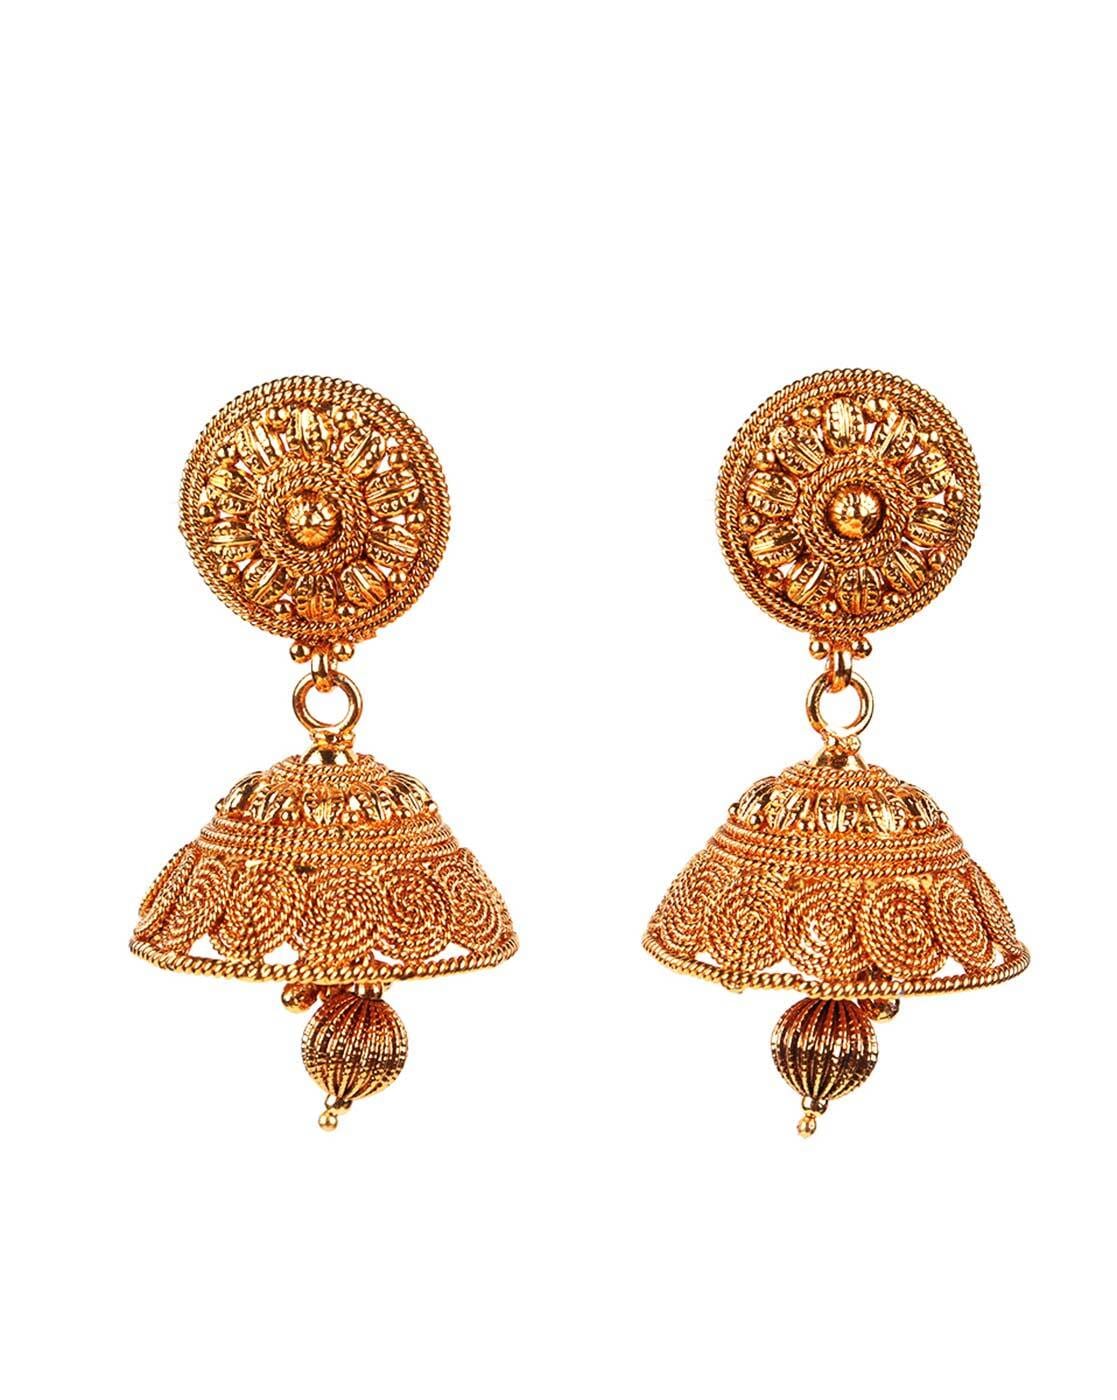 Danglers Online Shopping | Buy Drops Earrings Jewelry Designs